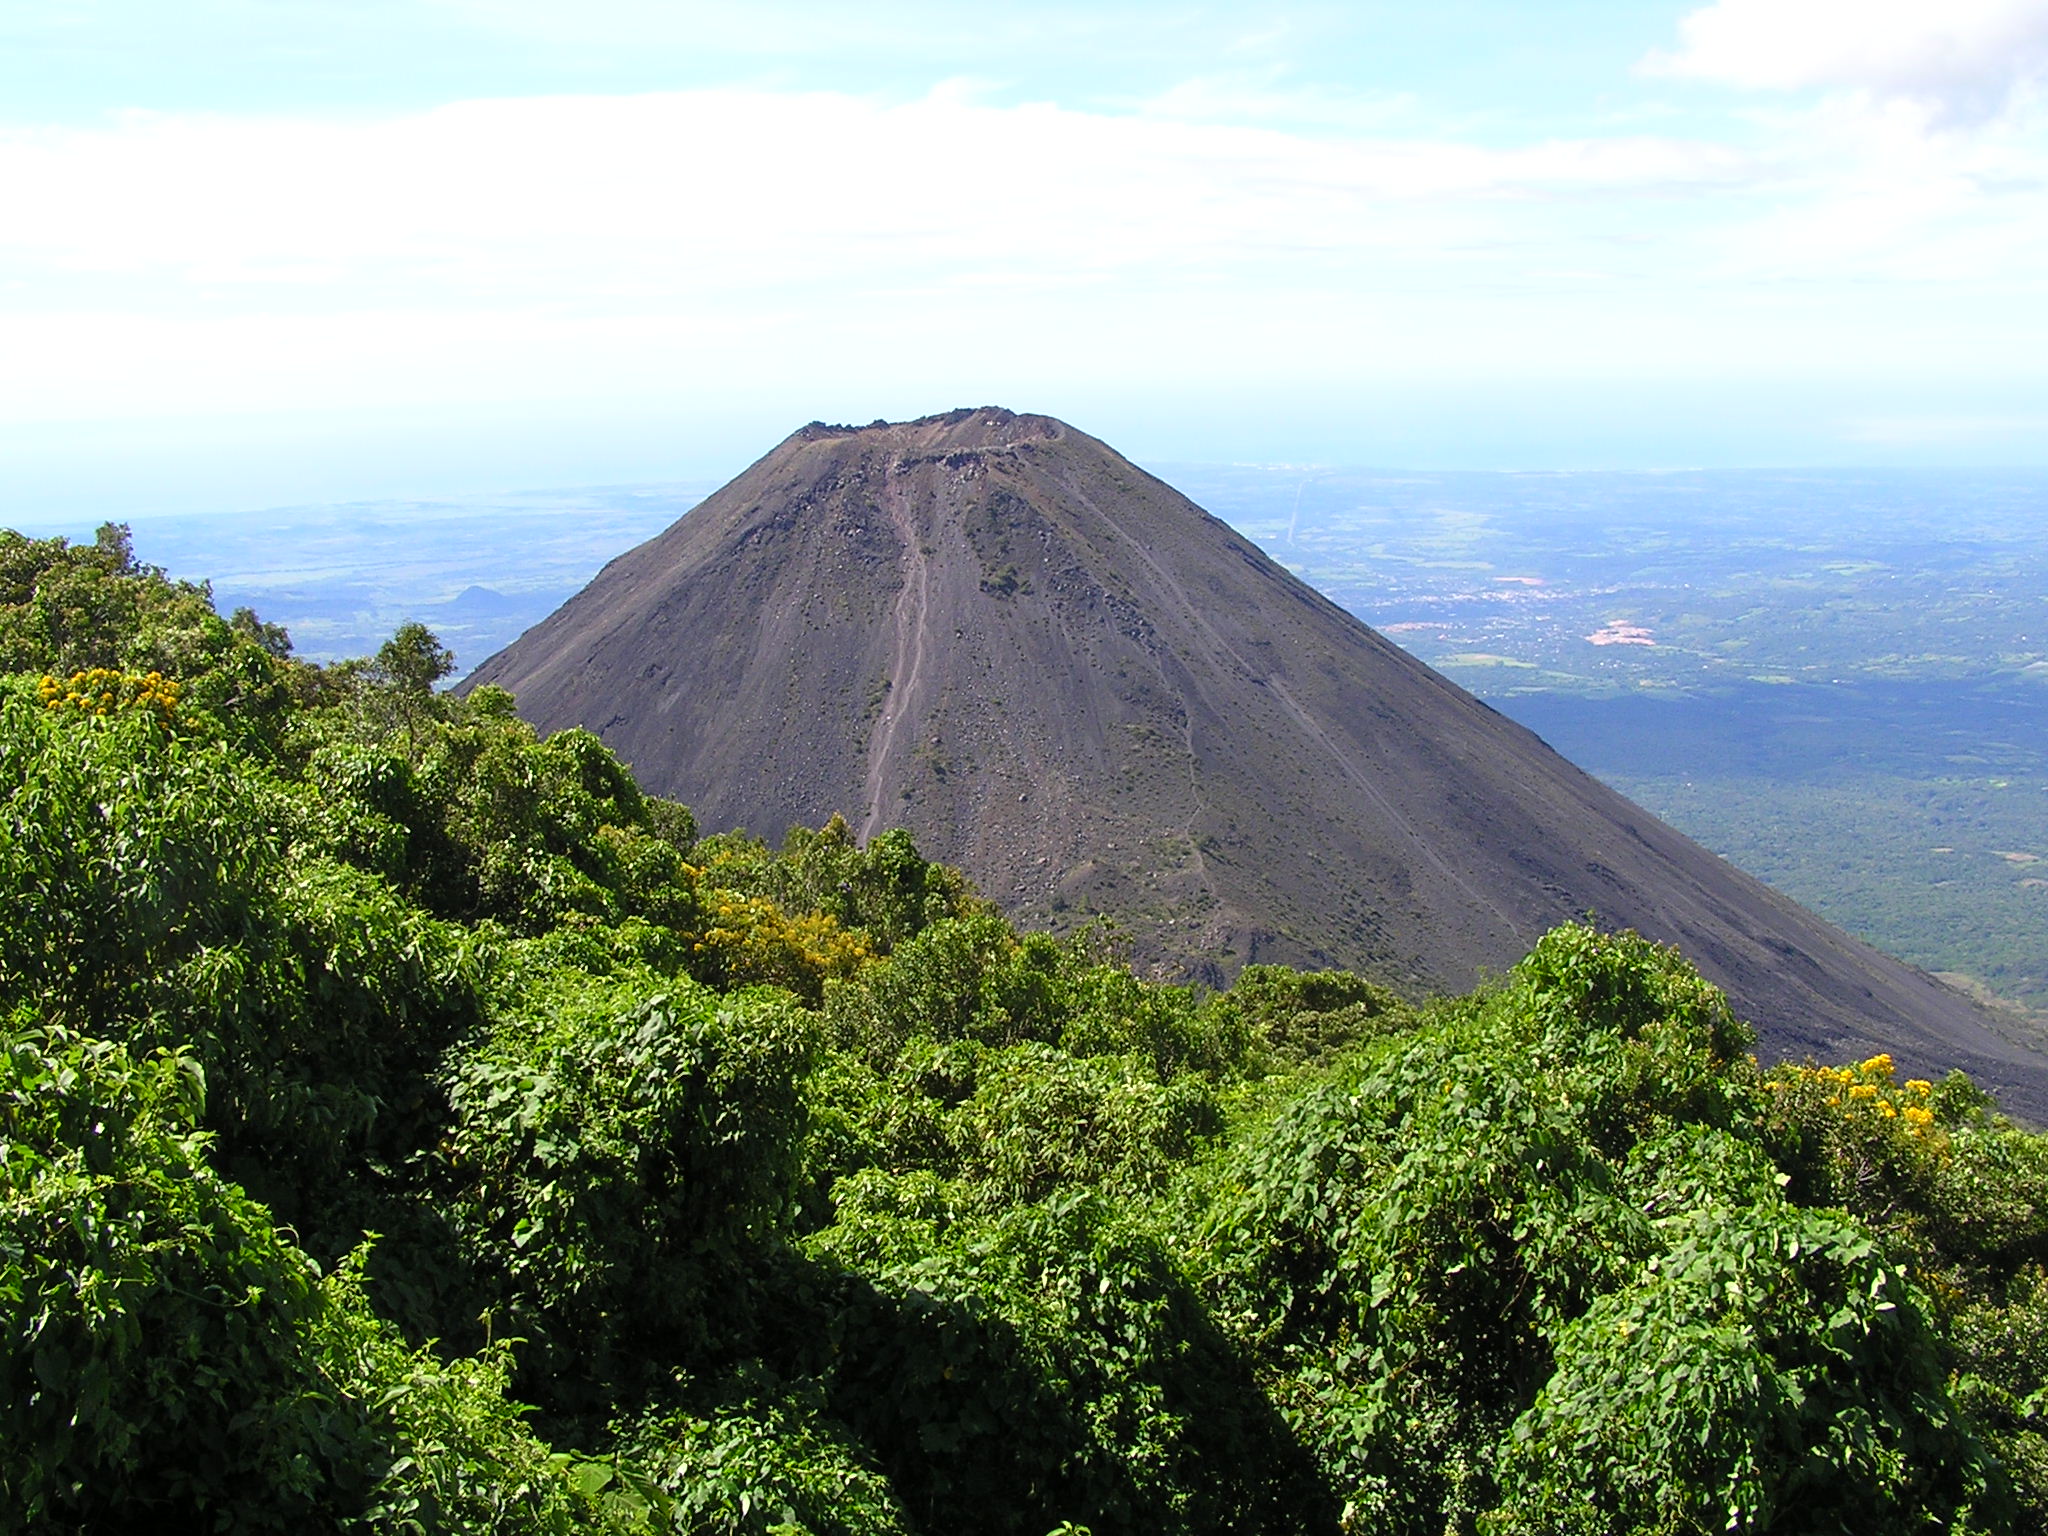 Alta susceptibilidad a deslizamientos en las zonas del volcán de Santa Ana y del volcán de Apaneca